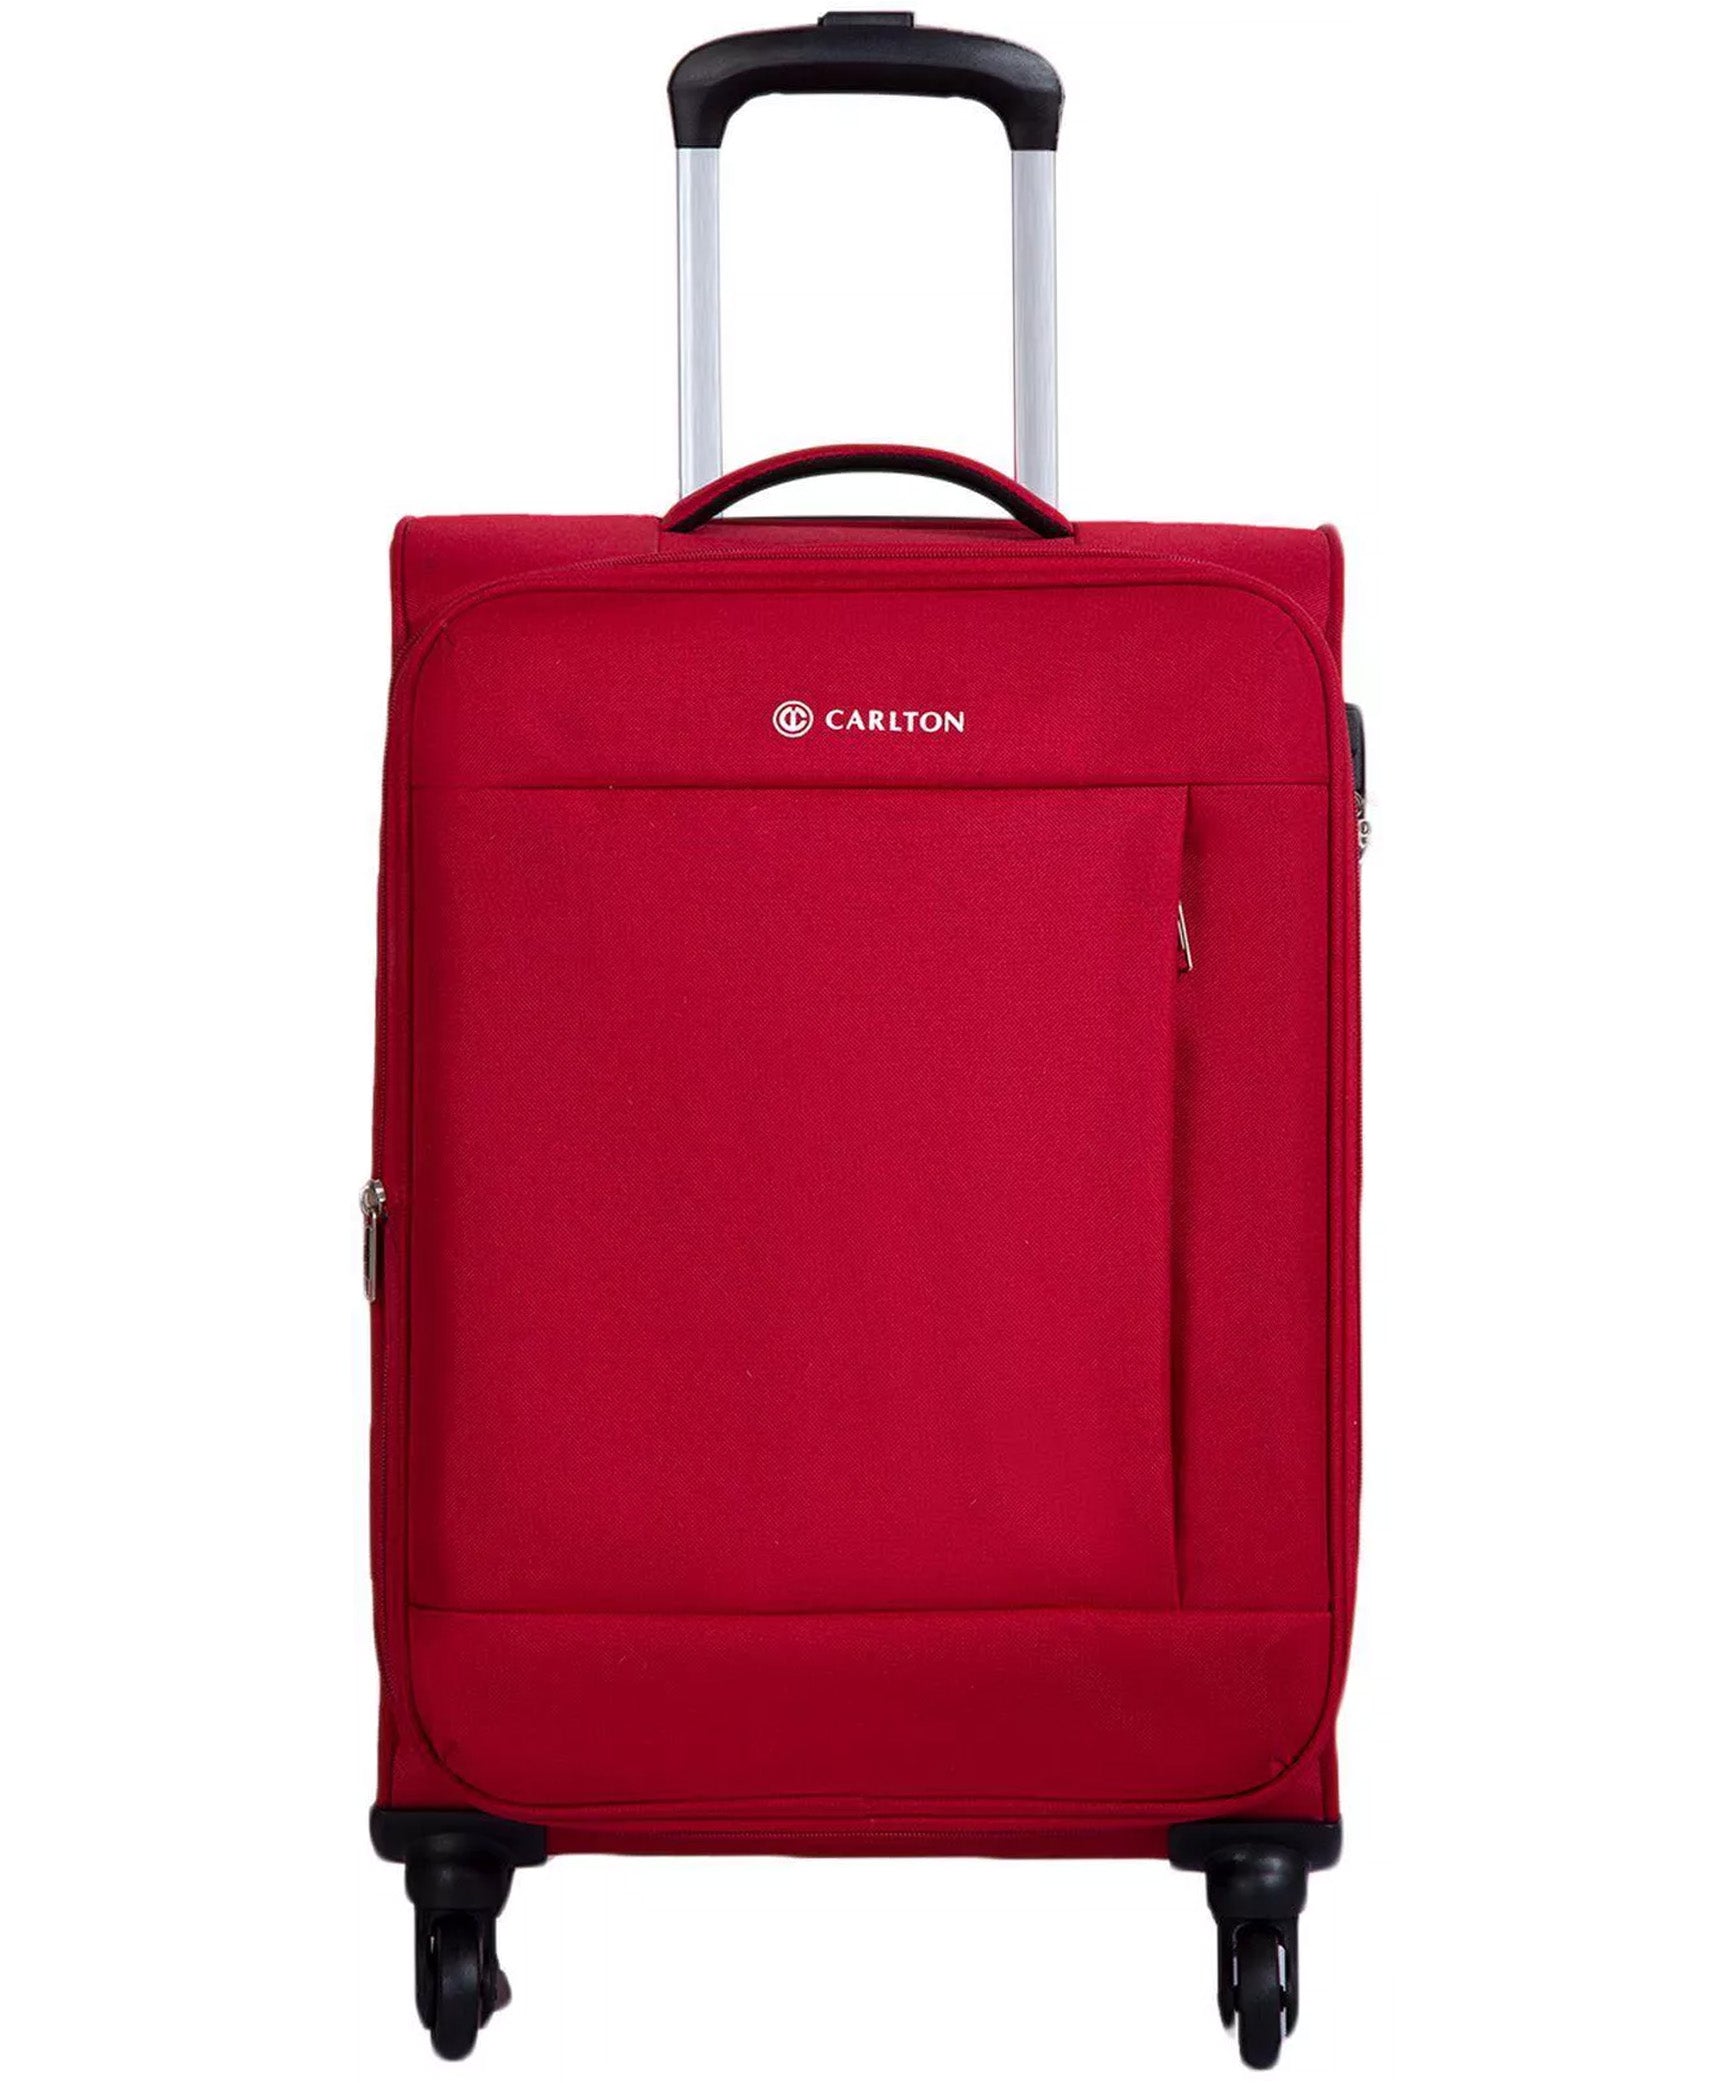 Carlton Elante 80cm, 4 Wheel Soft Top Cabin Luggage Trolley, Red,ELANTE80RD